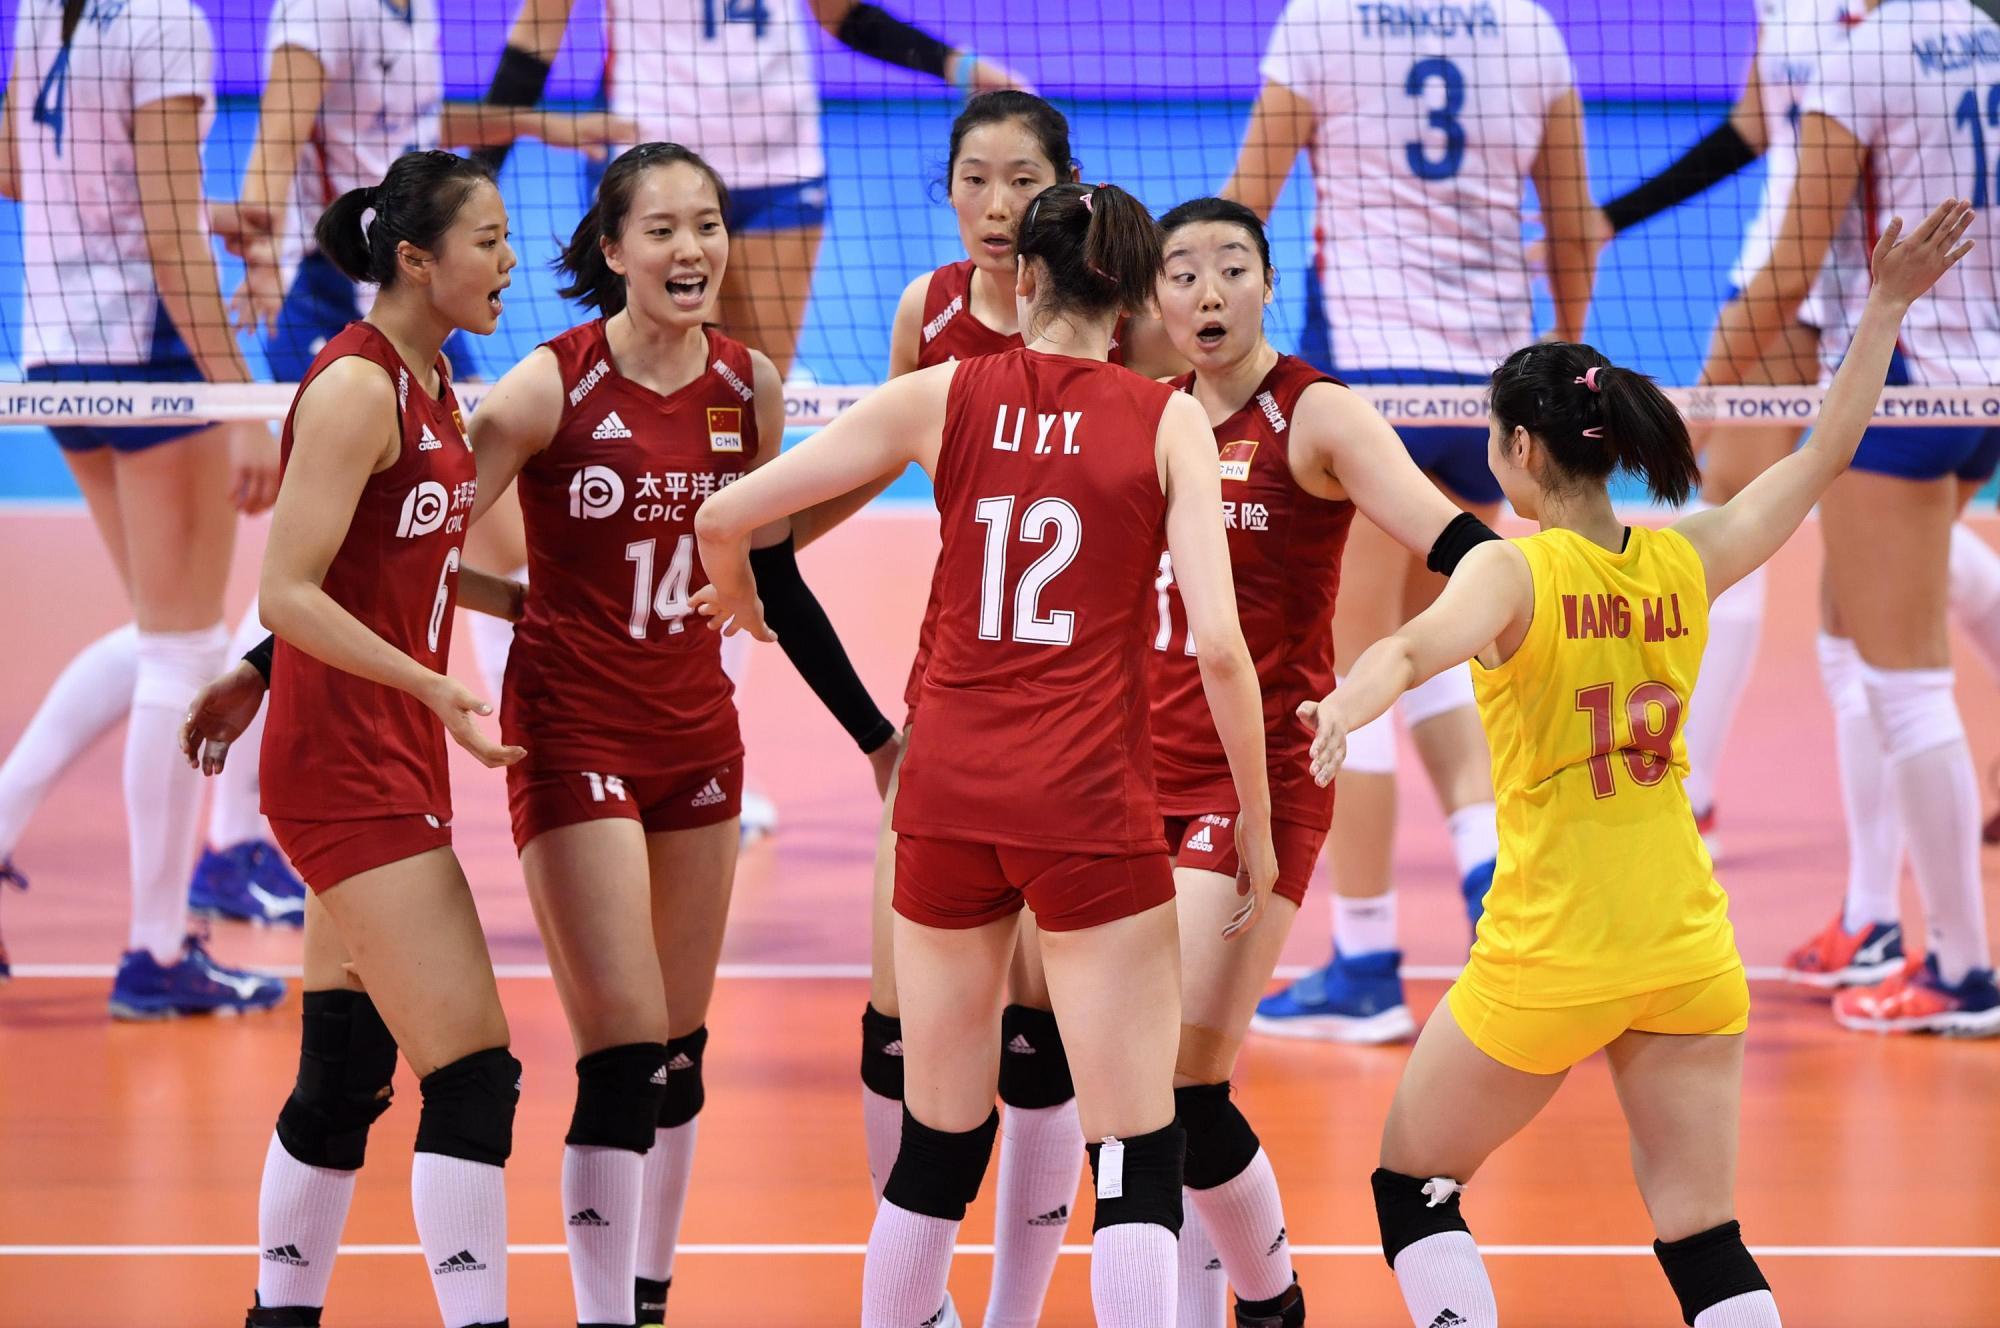 打开凤凰新闻,查看更多高清图片中国女排曾在奥运测试赛上和日本女排